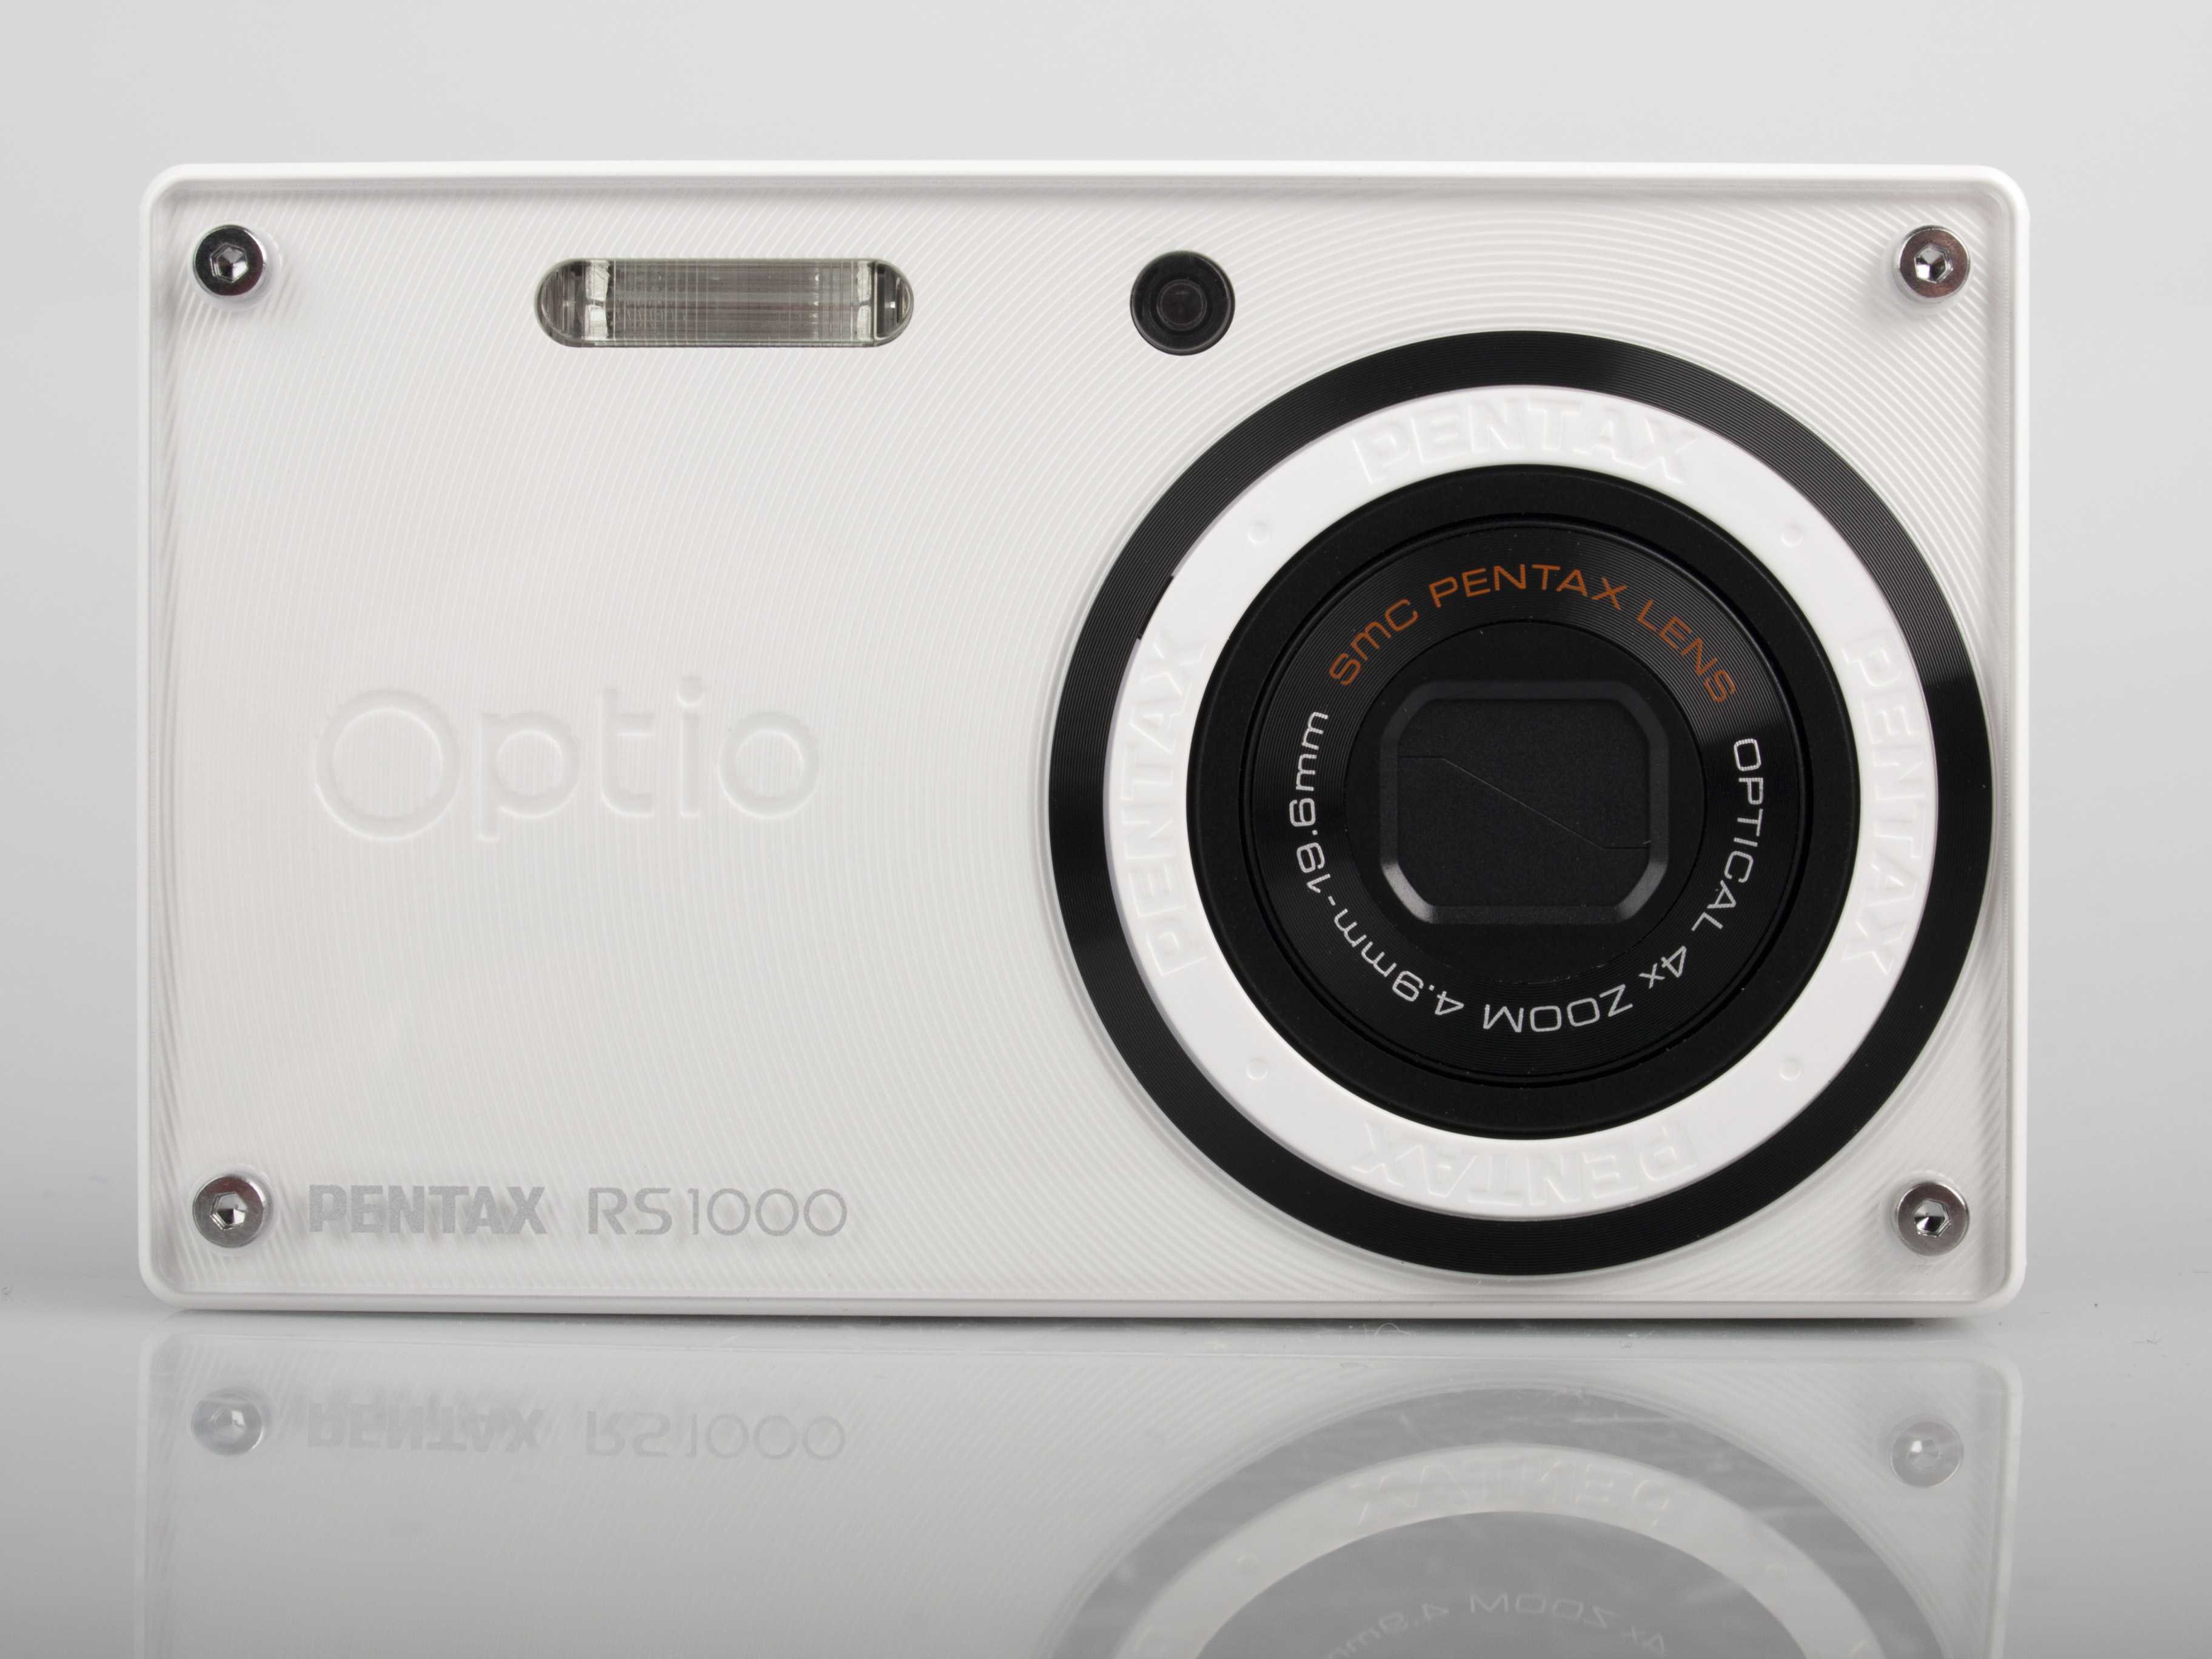 Фотоаппарат пентакс optio s50 купить недорого в москве, цена 2021, отзывы г. москва